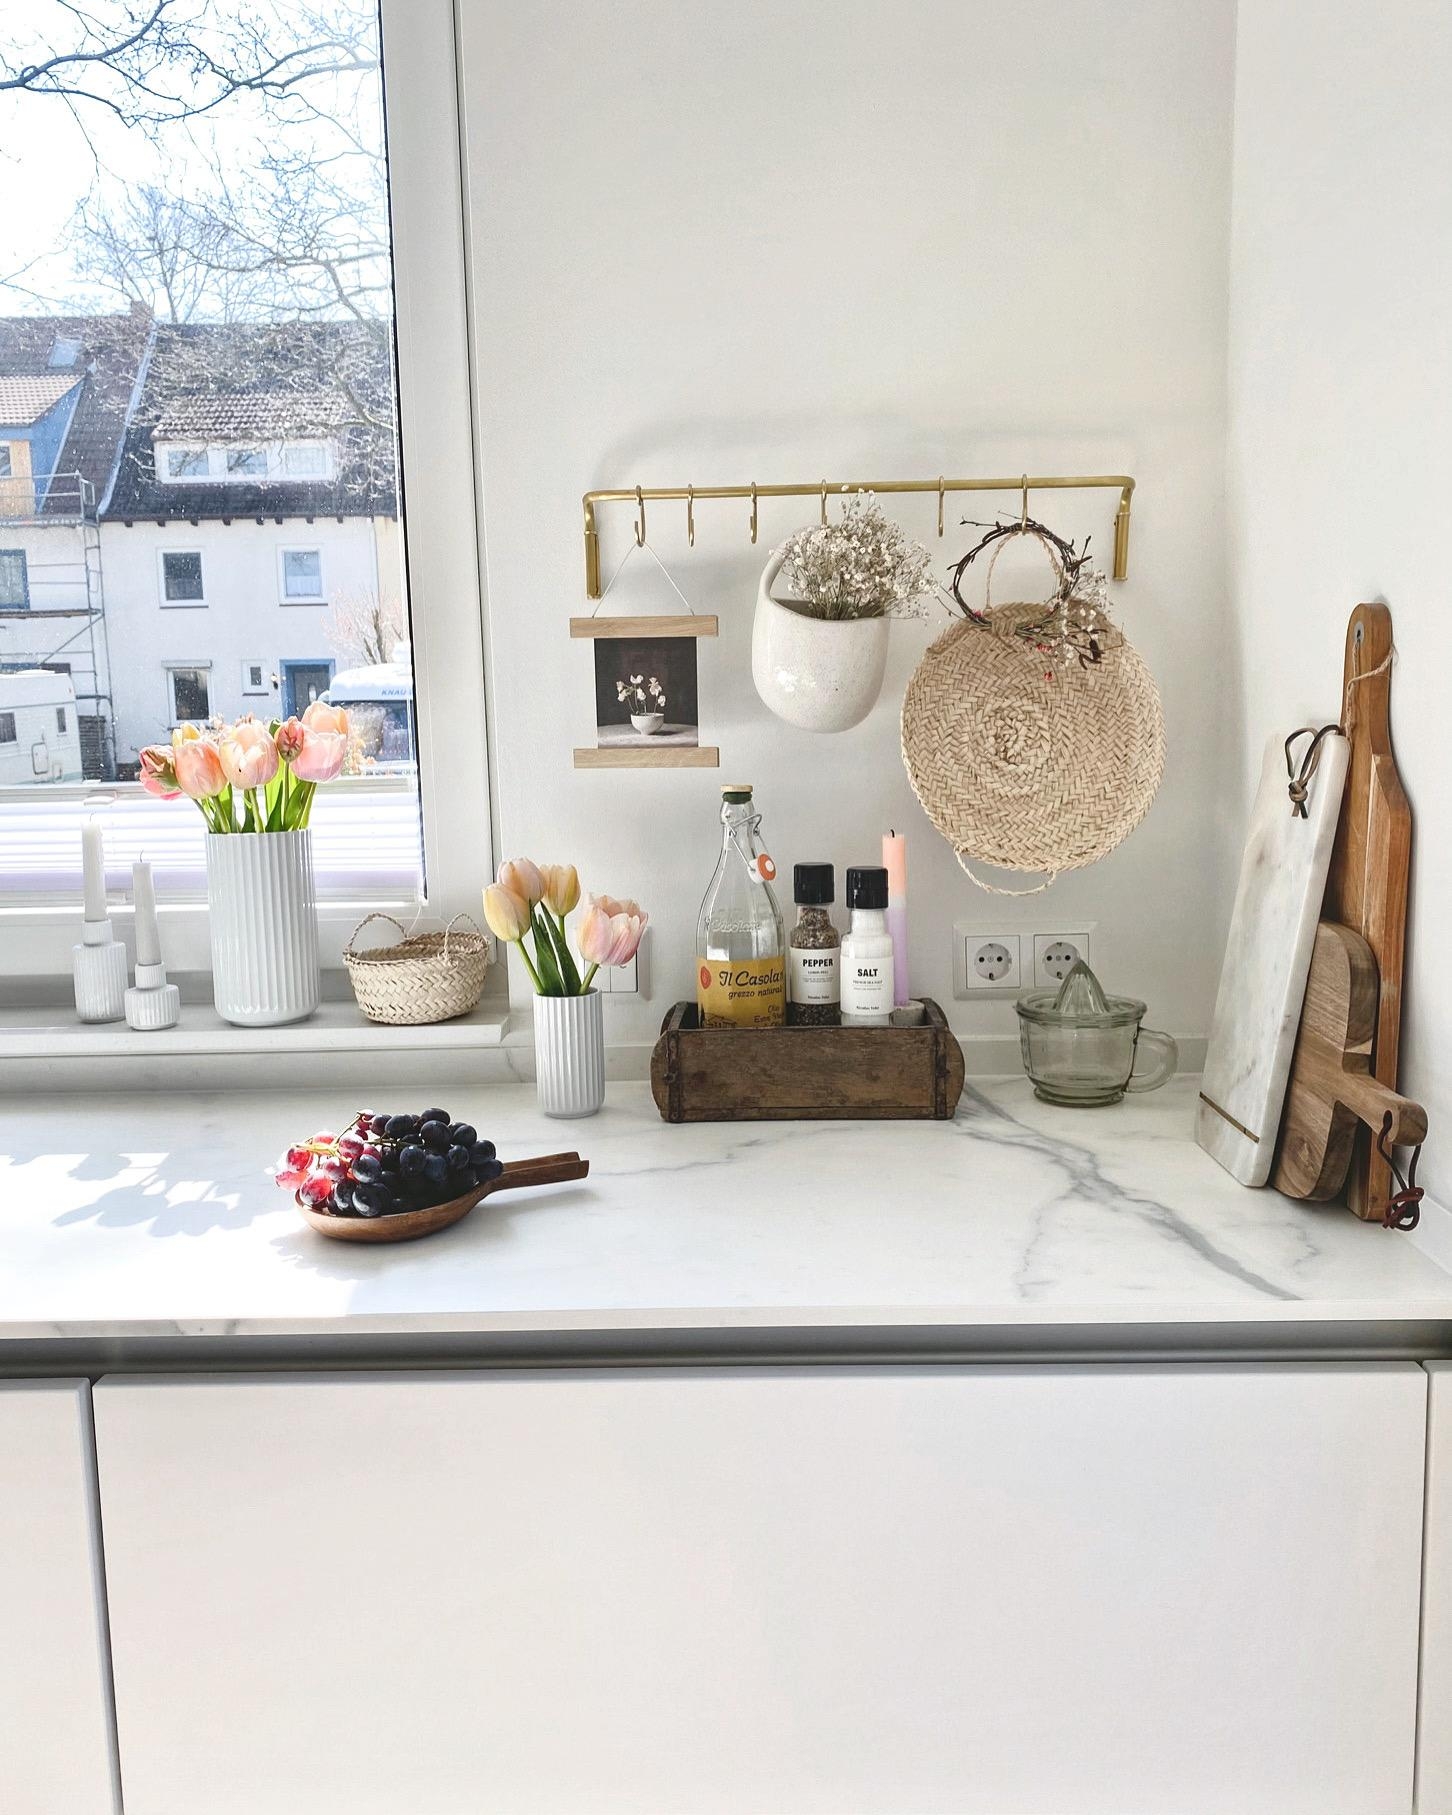 Küchendetails 💕
#küche#whitekitchen#weisseküche#interior#details#couchliebt